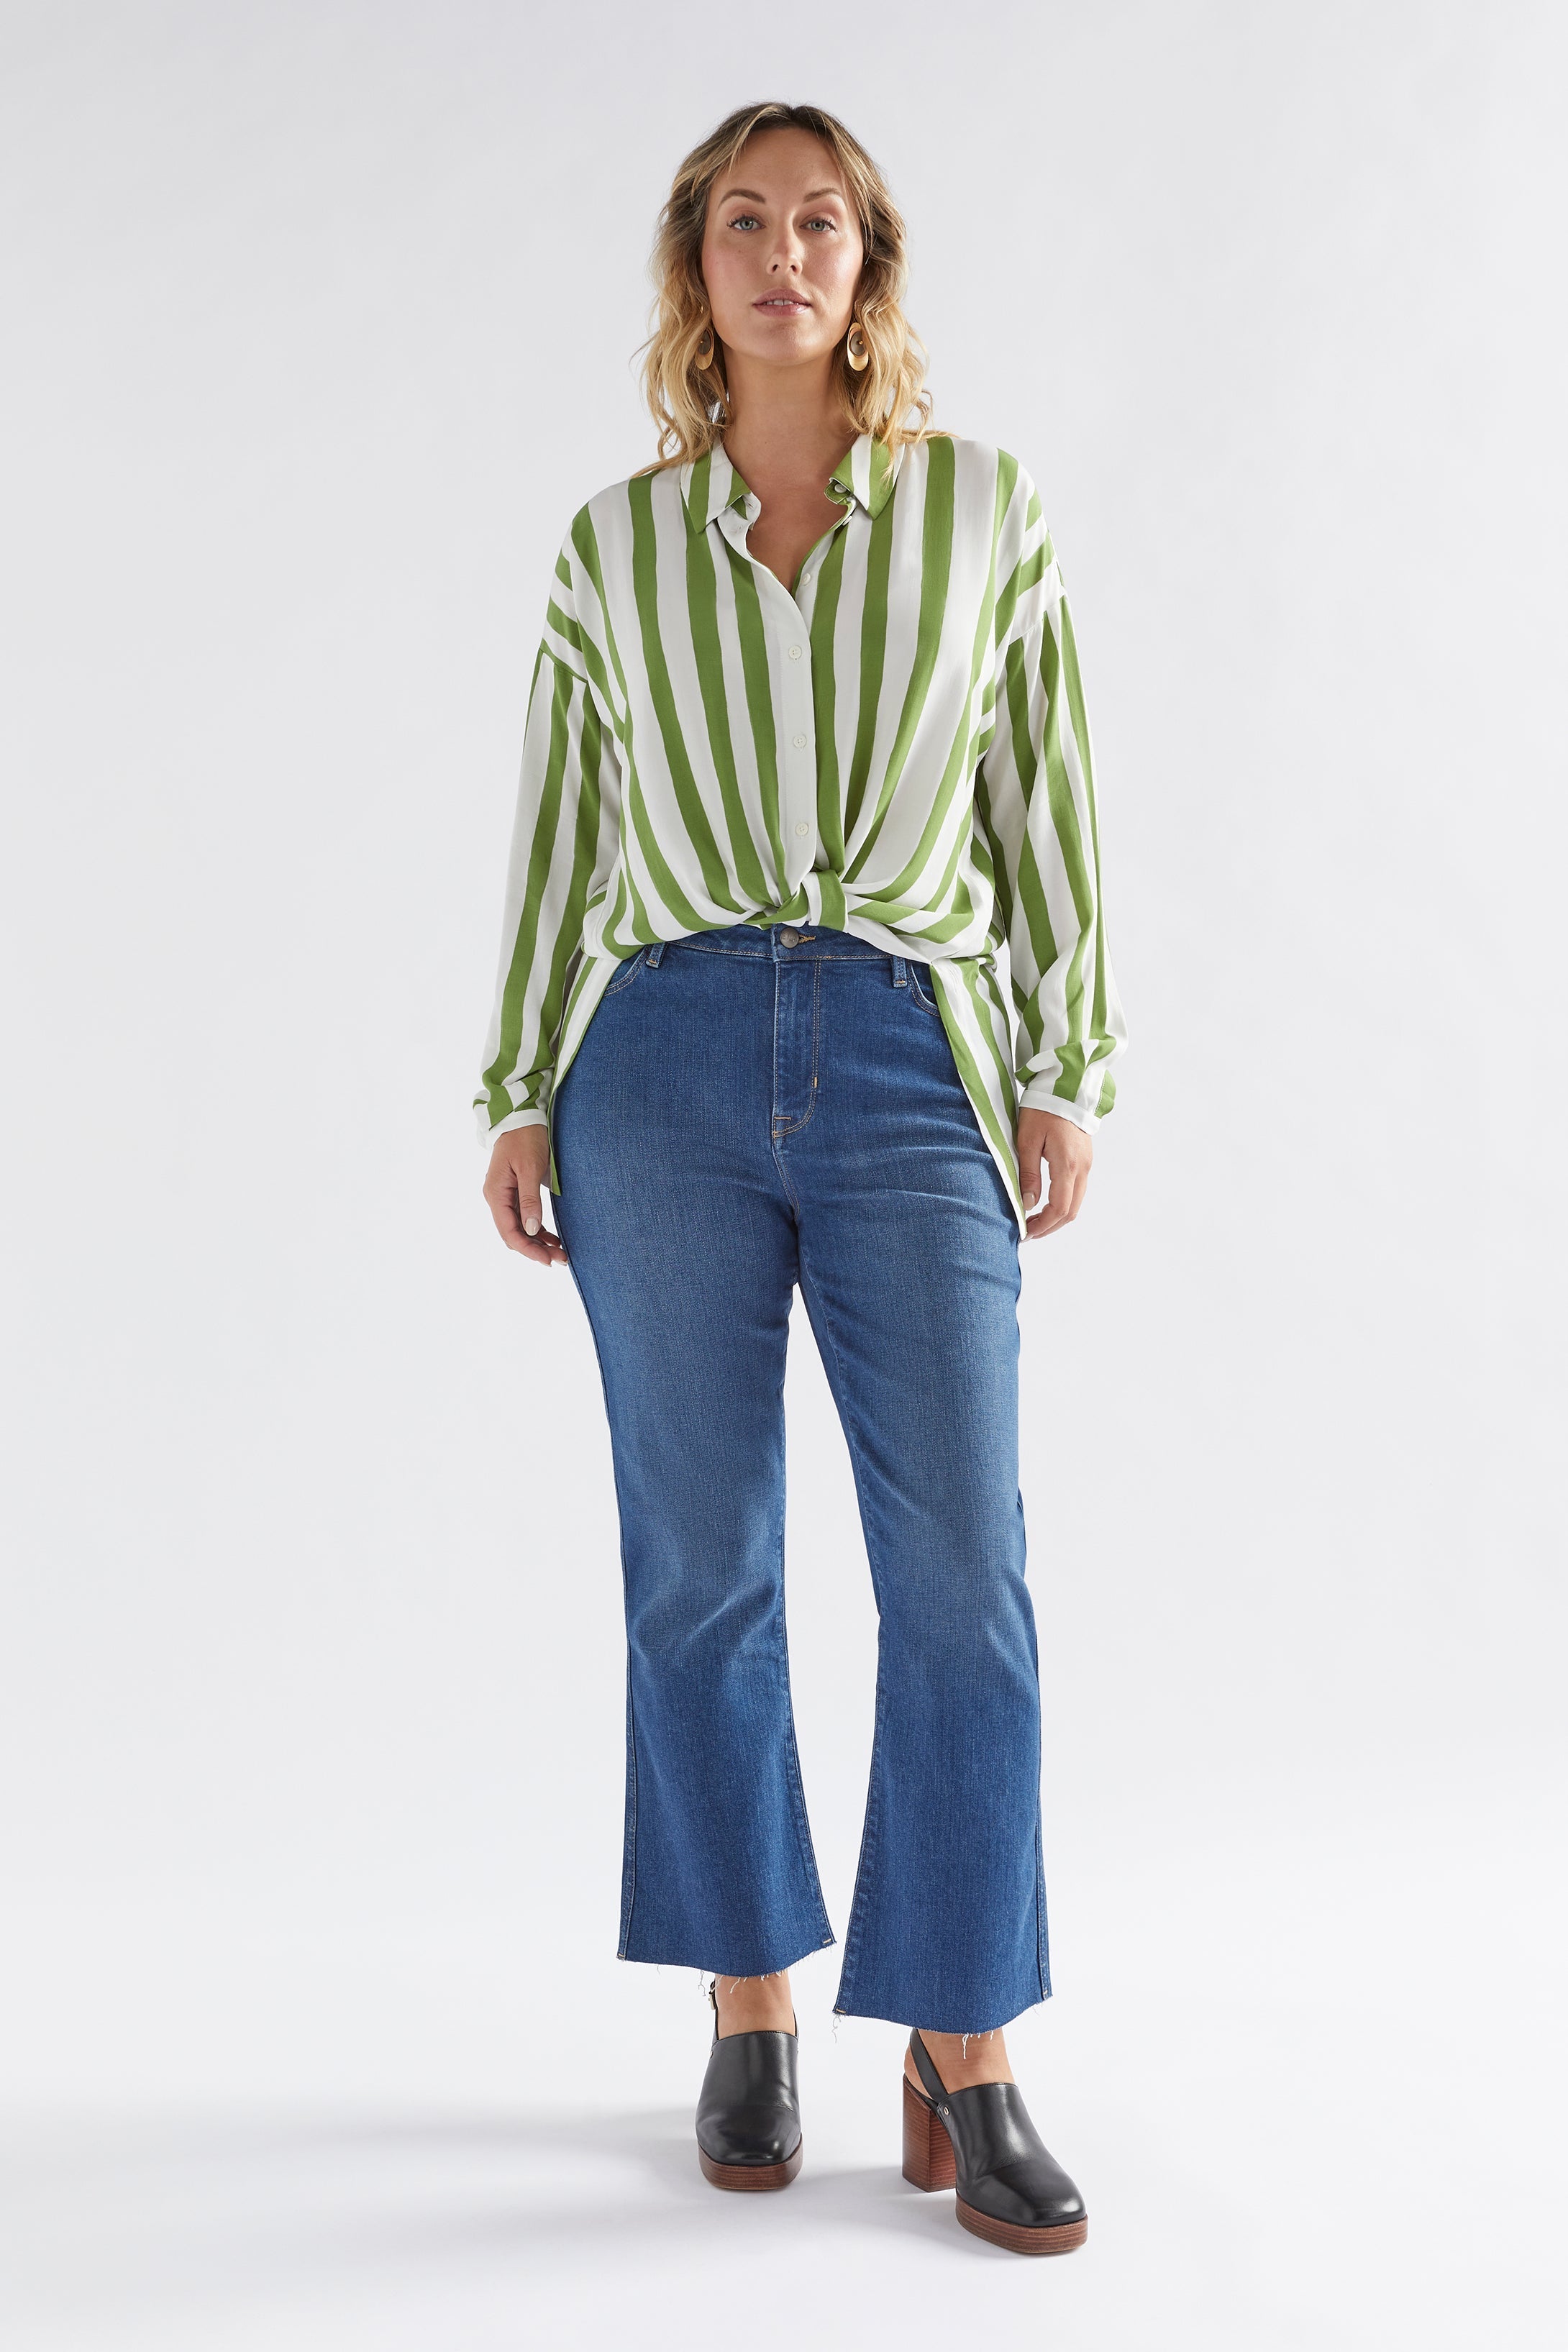 Tilbe Shirt | Green-White Paint Stripe